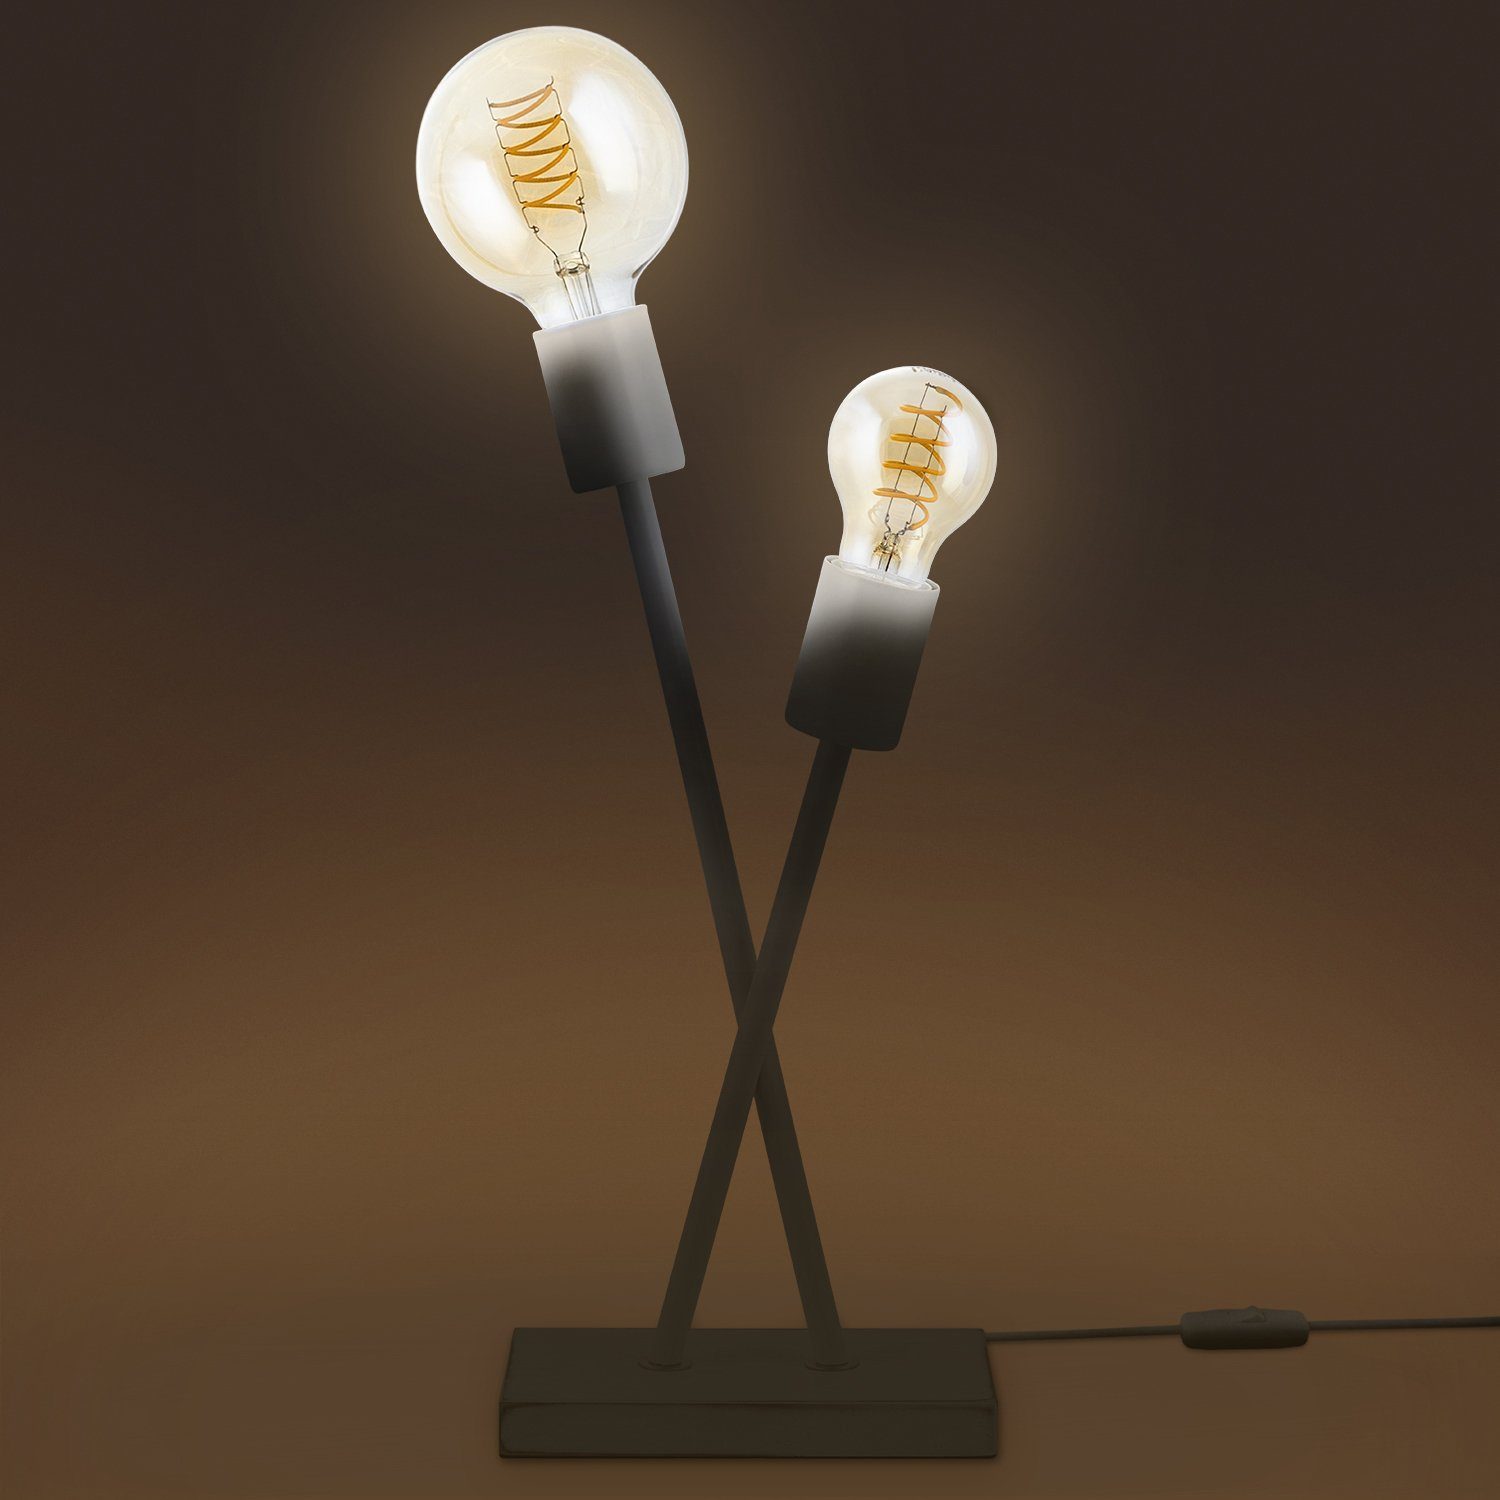 Lampe Paco Wohnzimmer E27 Retro Home IKS, Industrial Vintage Leuchtmittel, LED Design Stehlampe ohne Tischleuchte